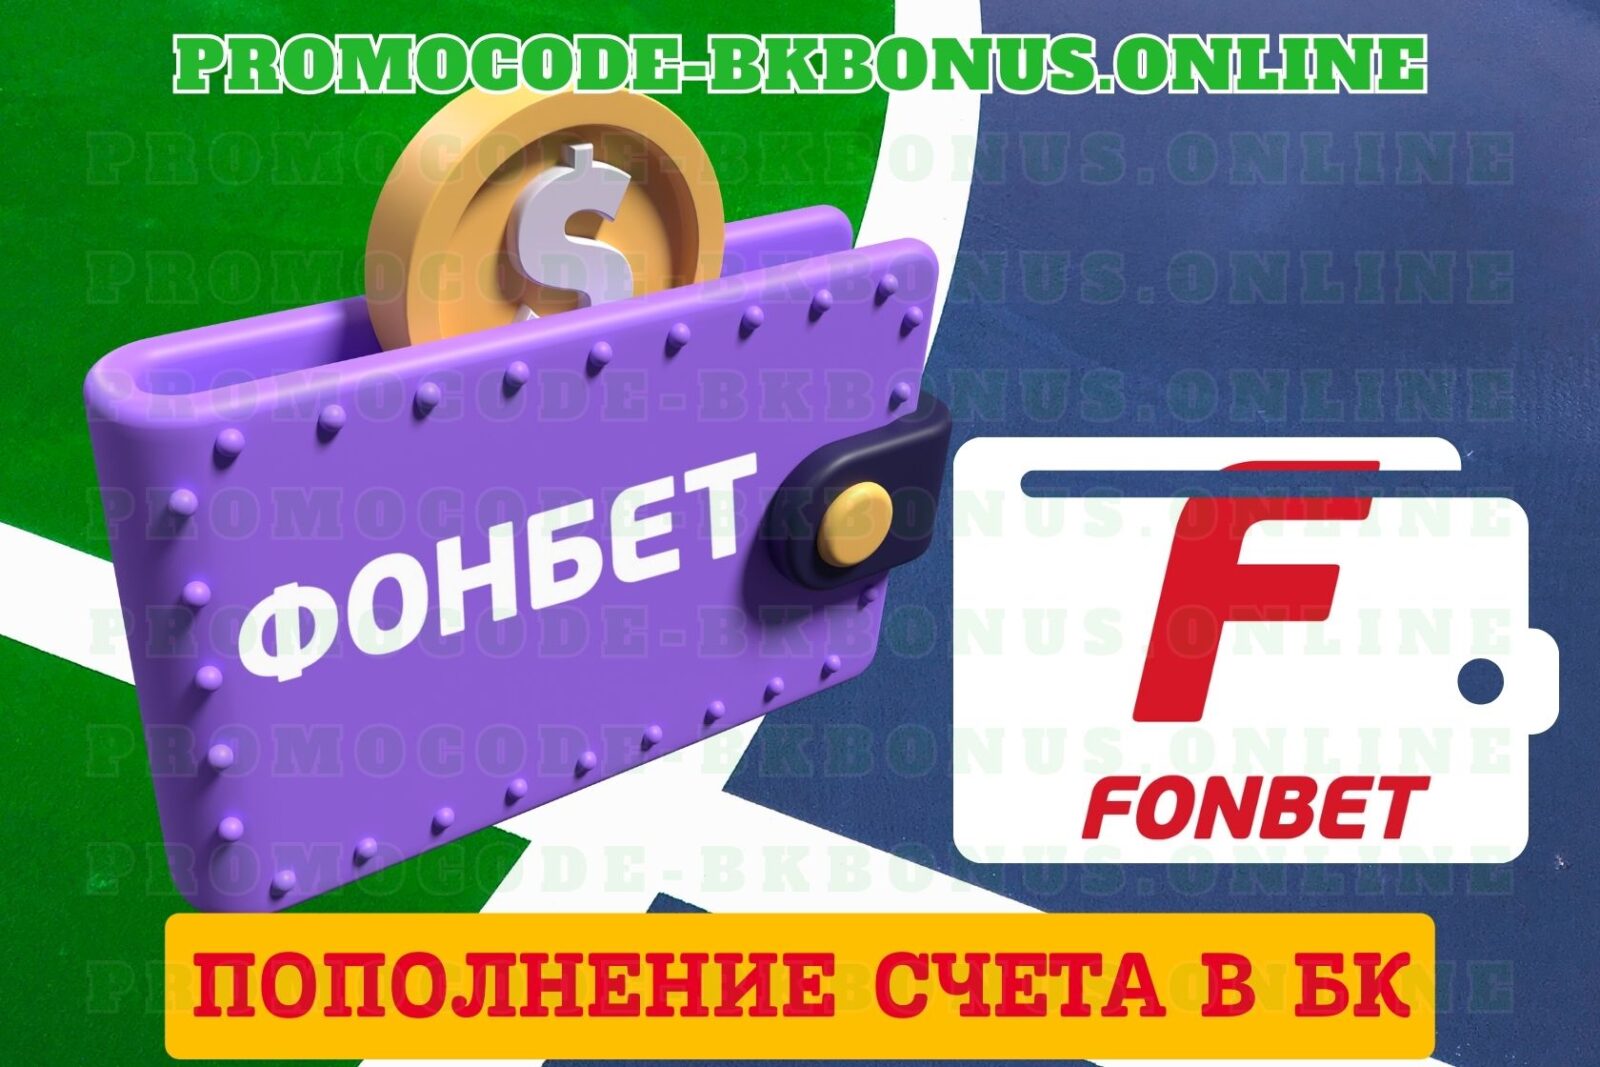 kak-popolnit-schet-v-bk-fonbet-bonus-fonbet-bonus-za-registraciyu-promokod-fribet-fonbet-2023